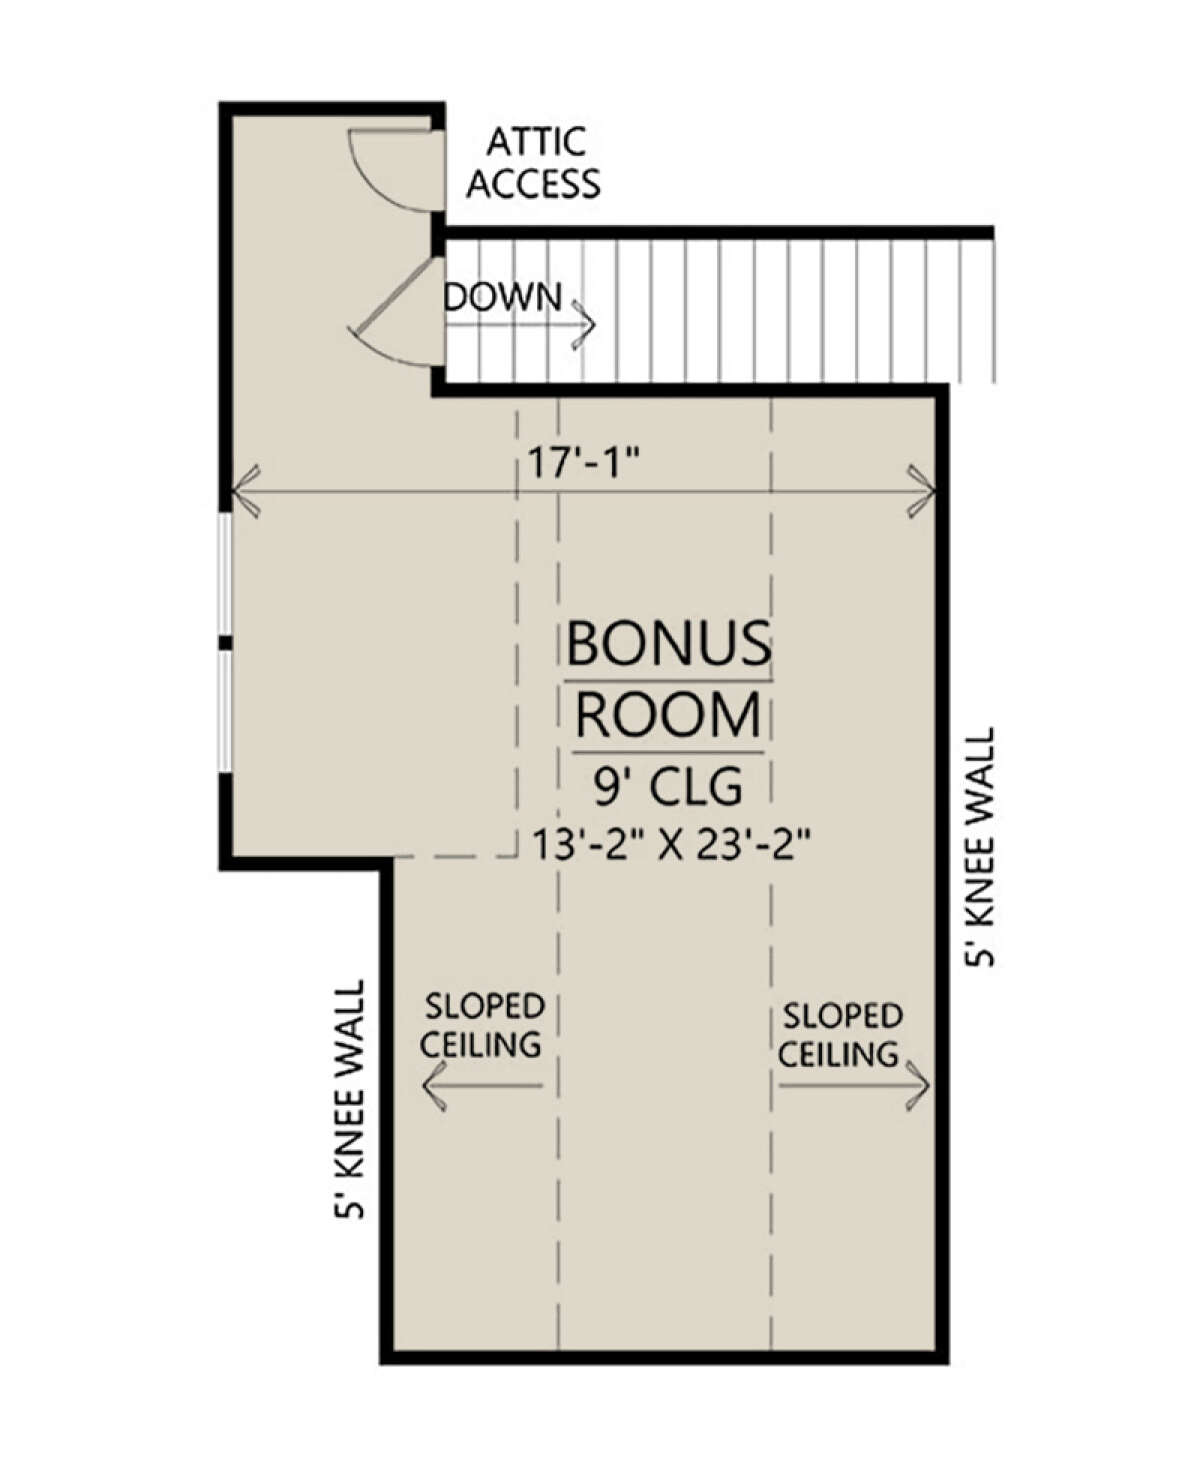 Bonus Room for House Plan #4534-00059